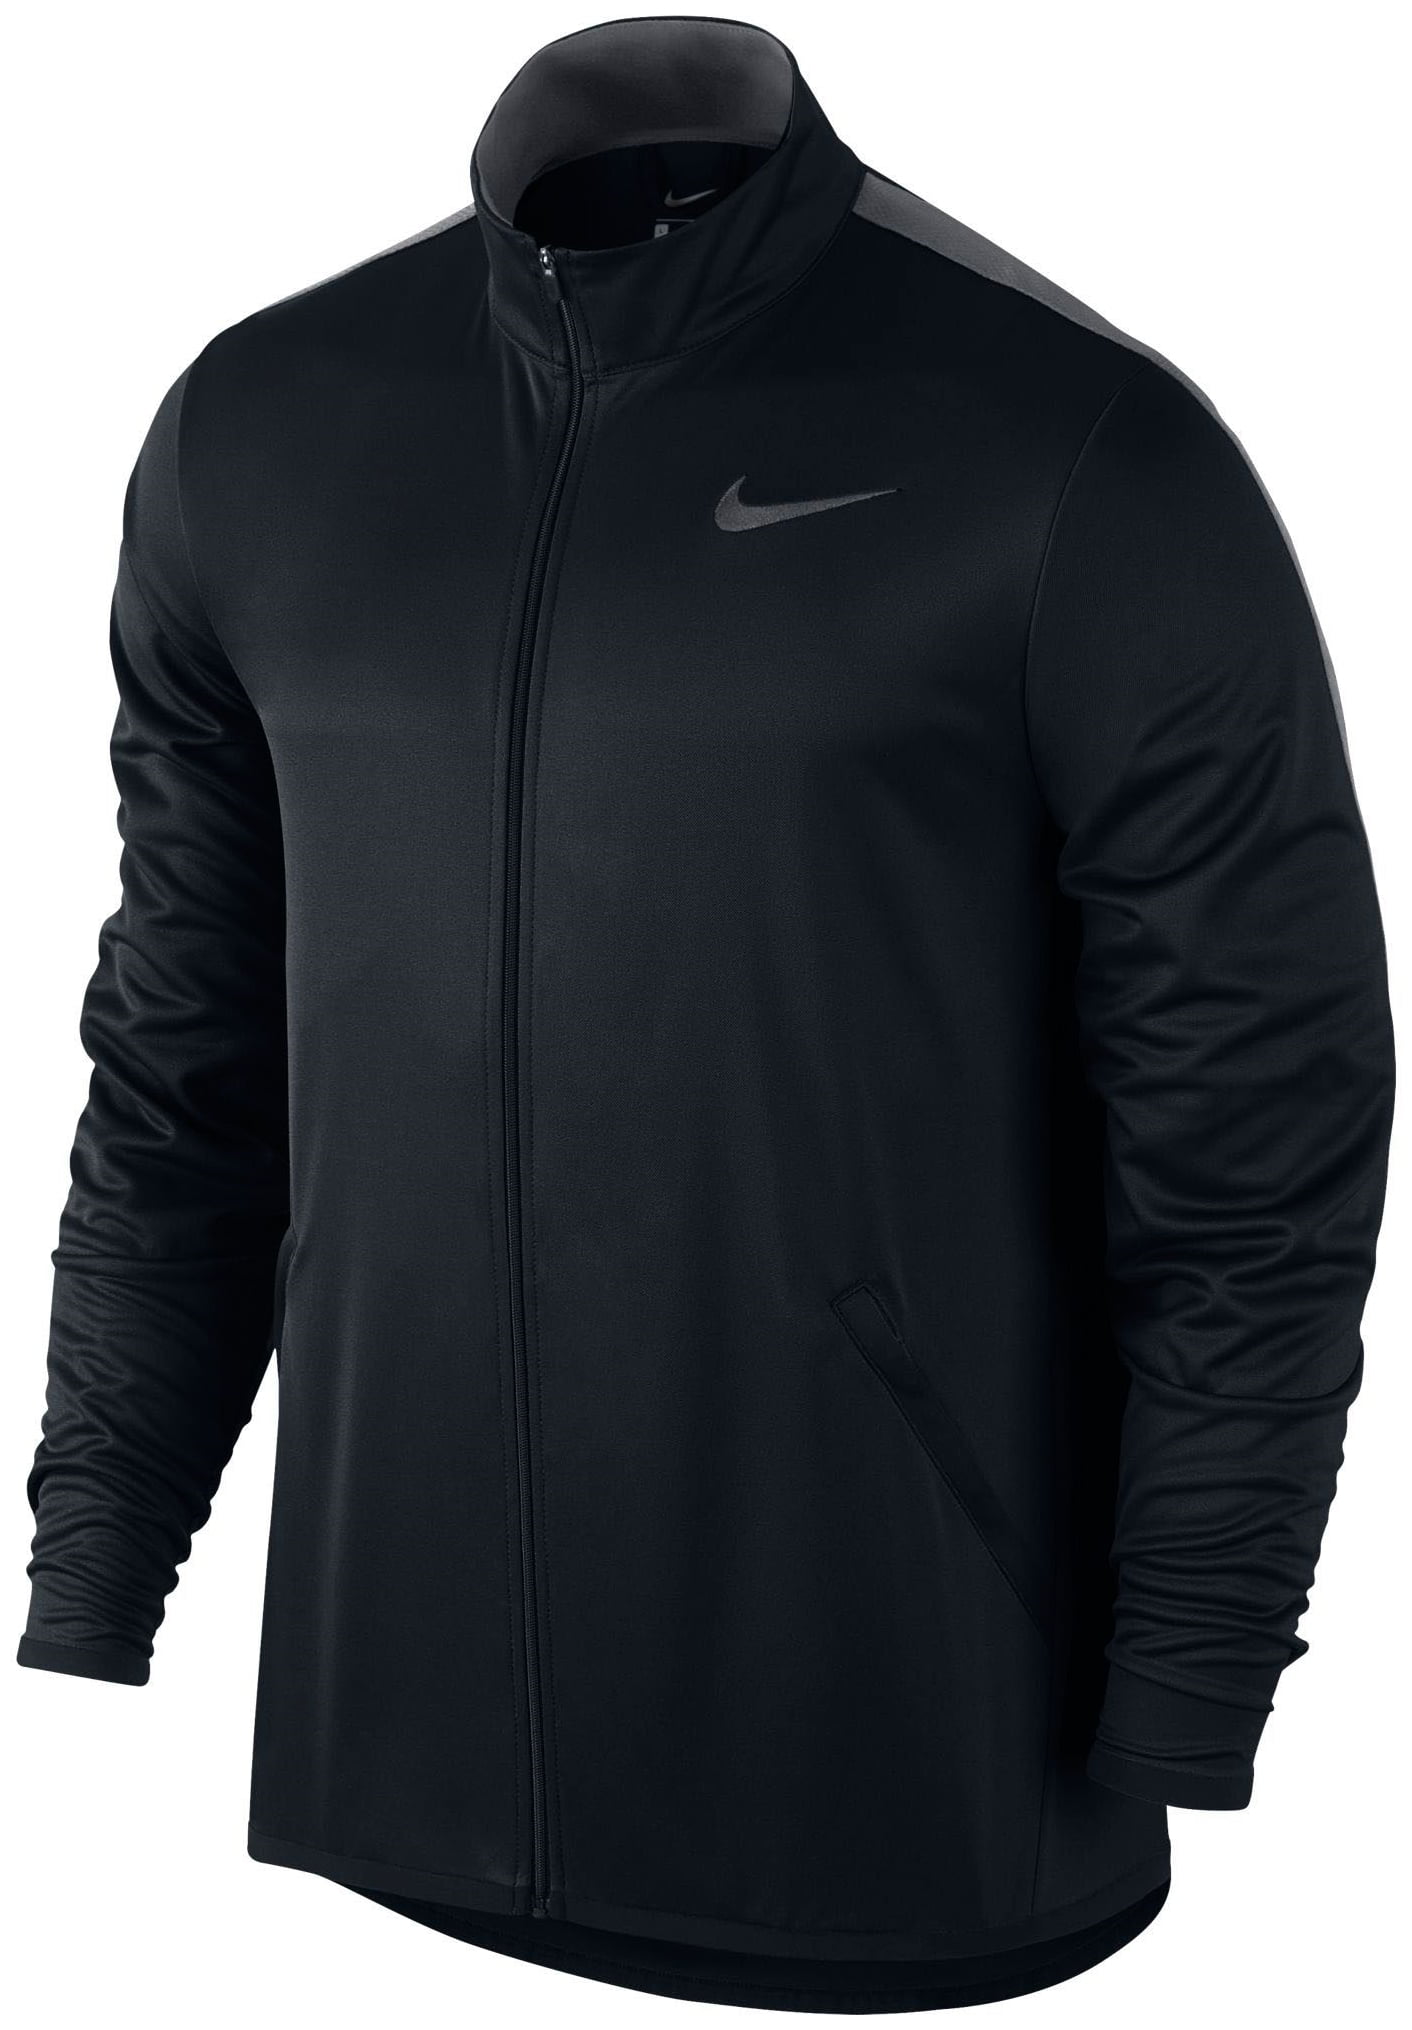 Nike - Nike Men's Epic Full Zip Jacket 